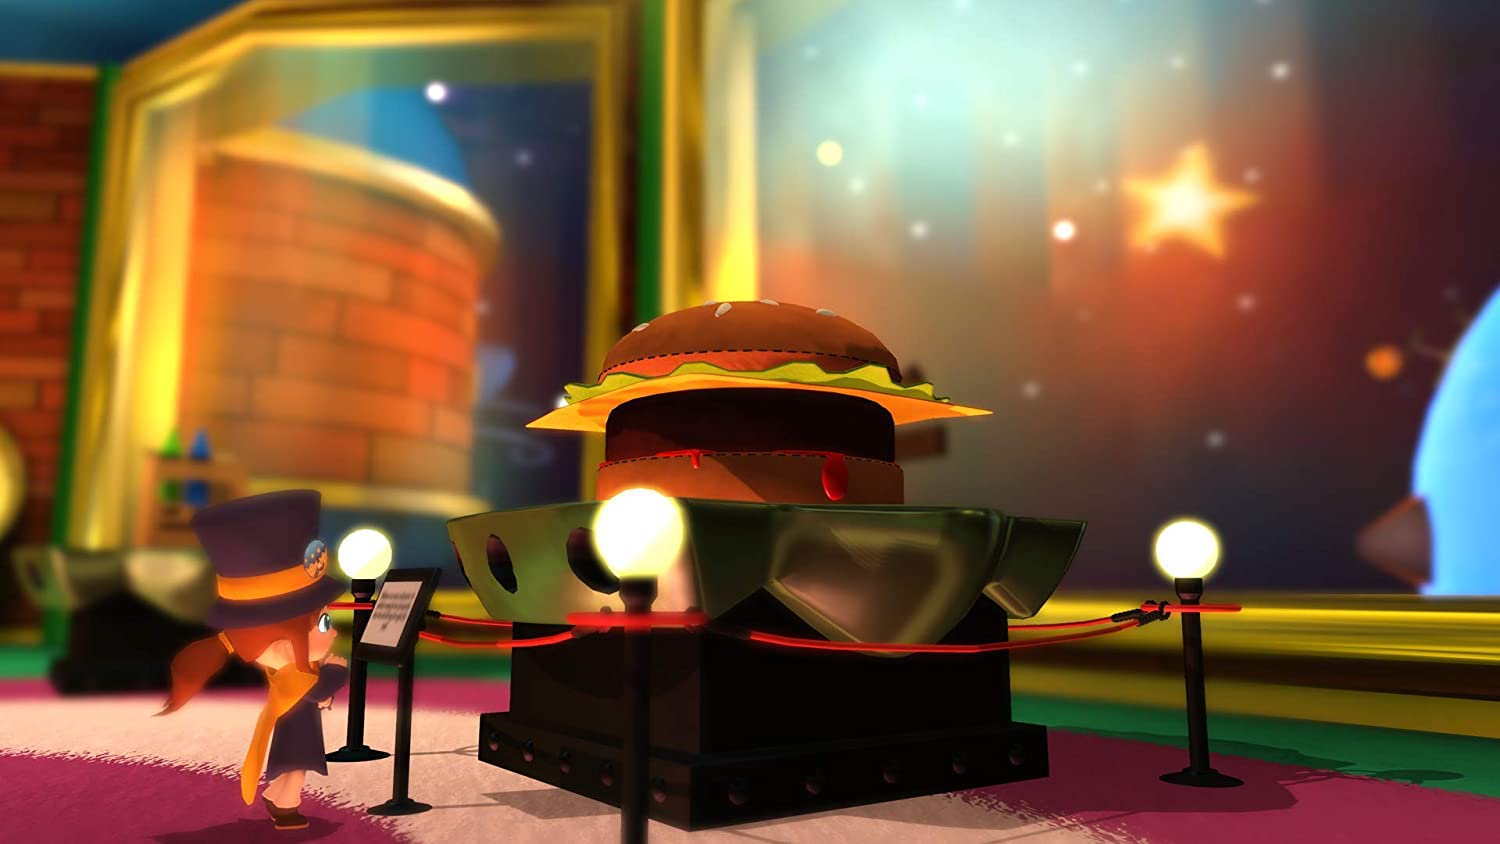 Скриншоты A Hat in Time [PS4, английская версия] интернет-магазин Омегагейм